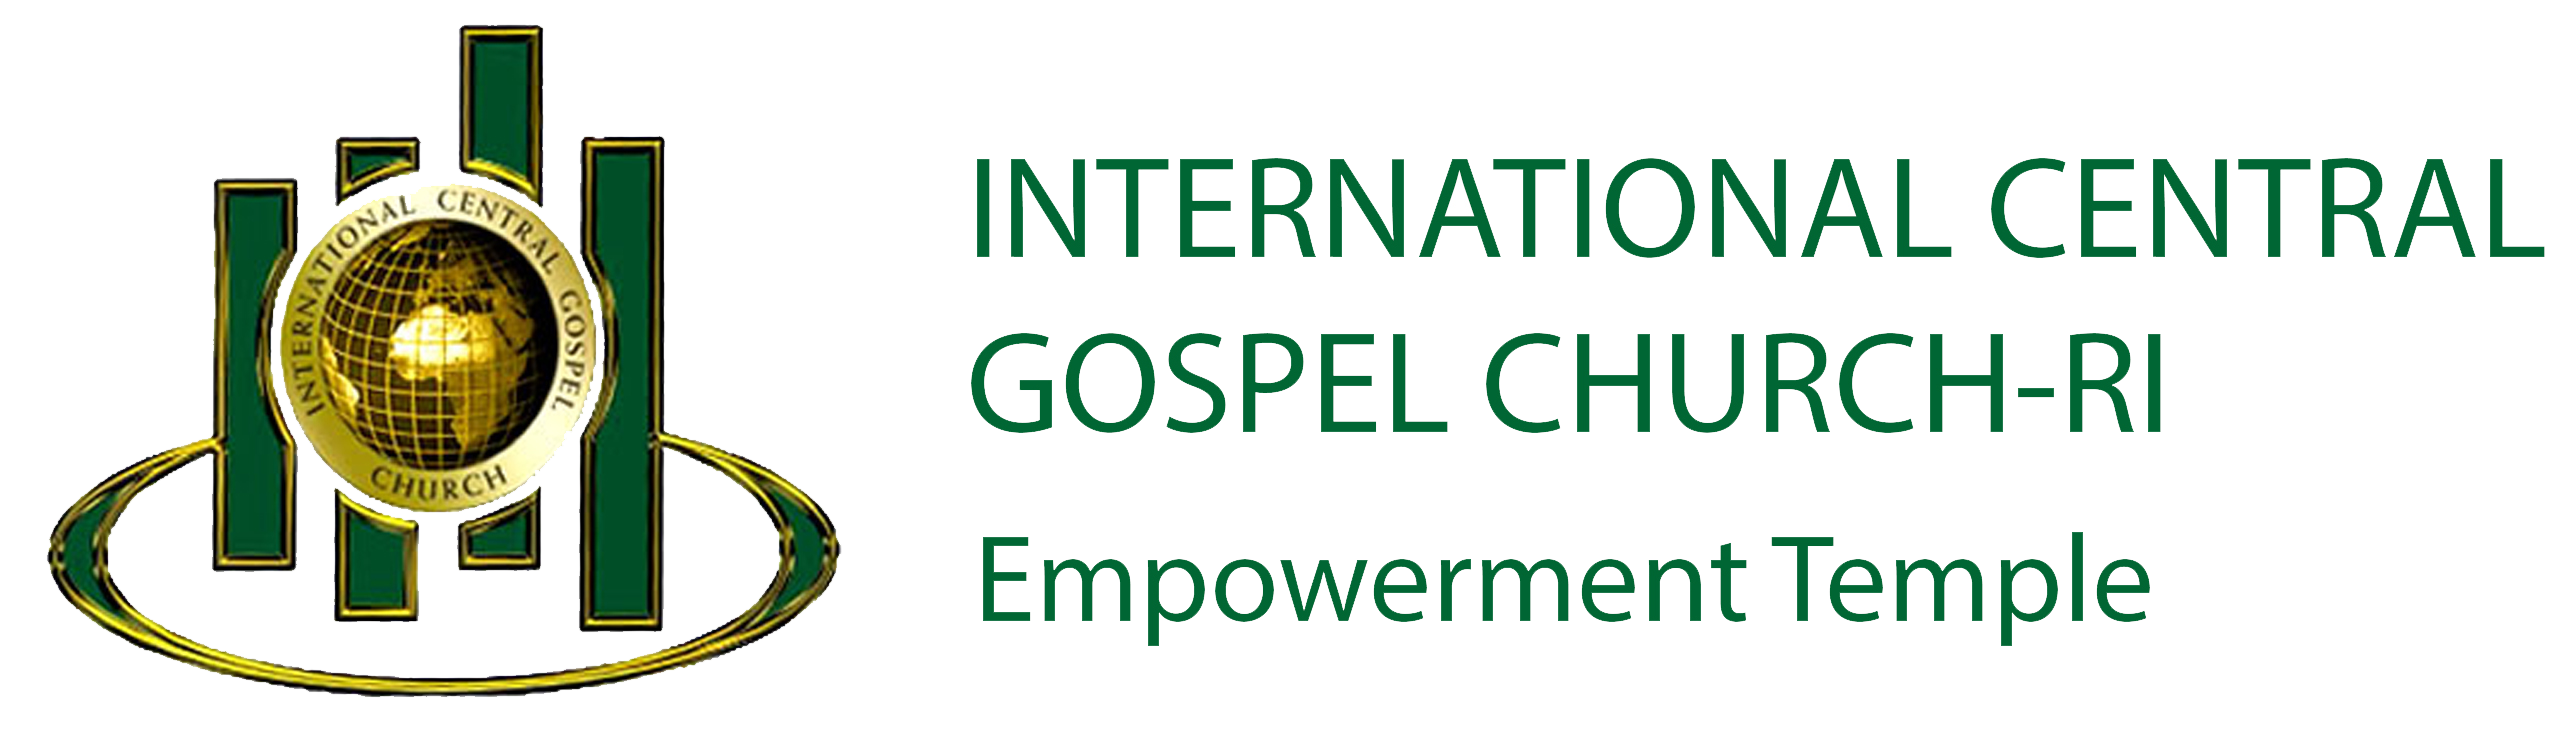 ICGC Empowerment Temple